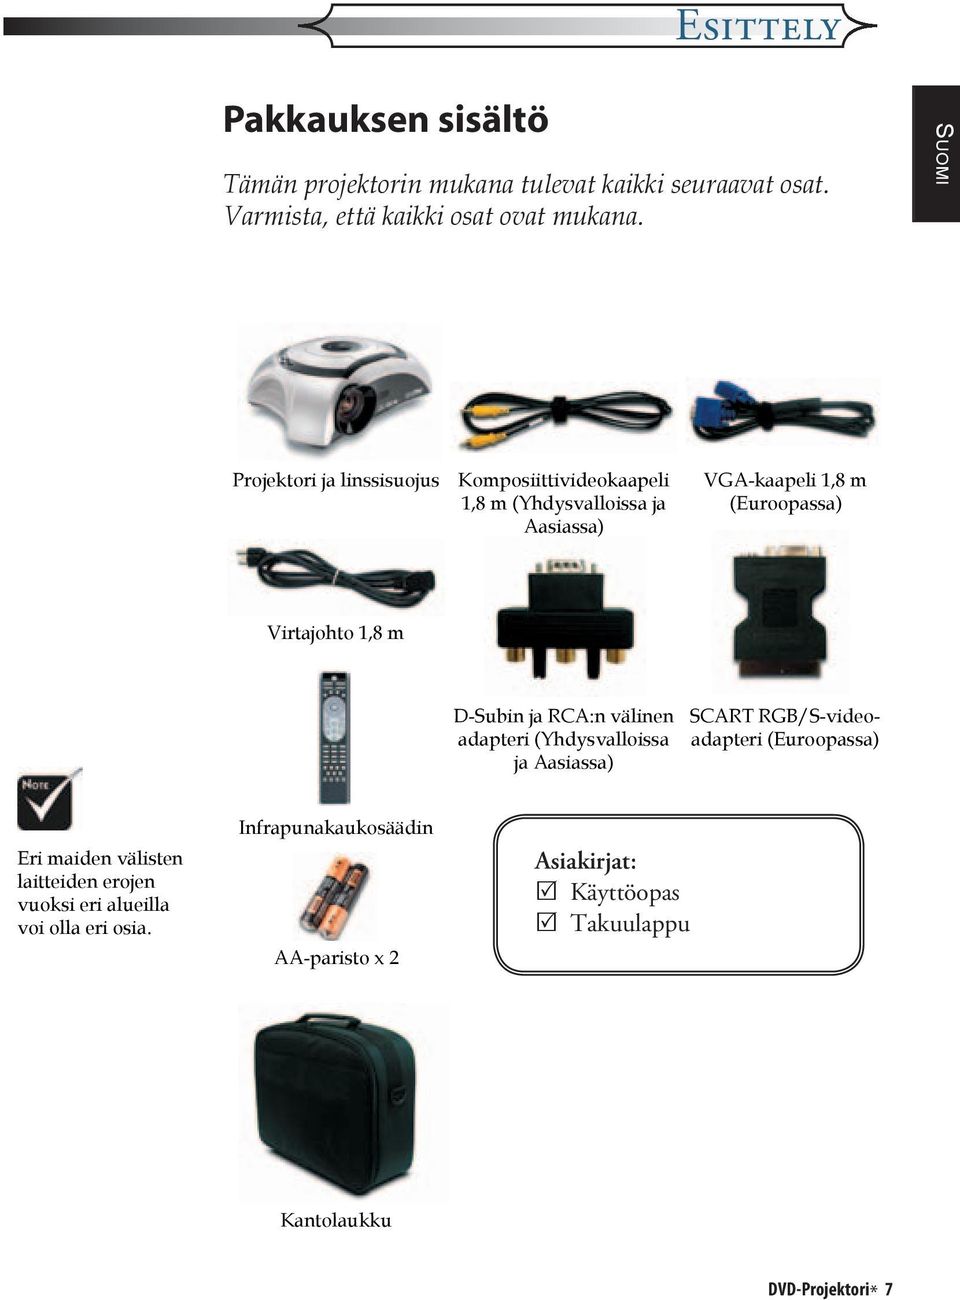 D-Subin ja RCA:n välinen adapteri (Yhdysvalloissa ja Aasiassa) SCART RGB/S-videoadapteri (Euroopassa) Eri maiden välisten laitteiden